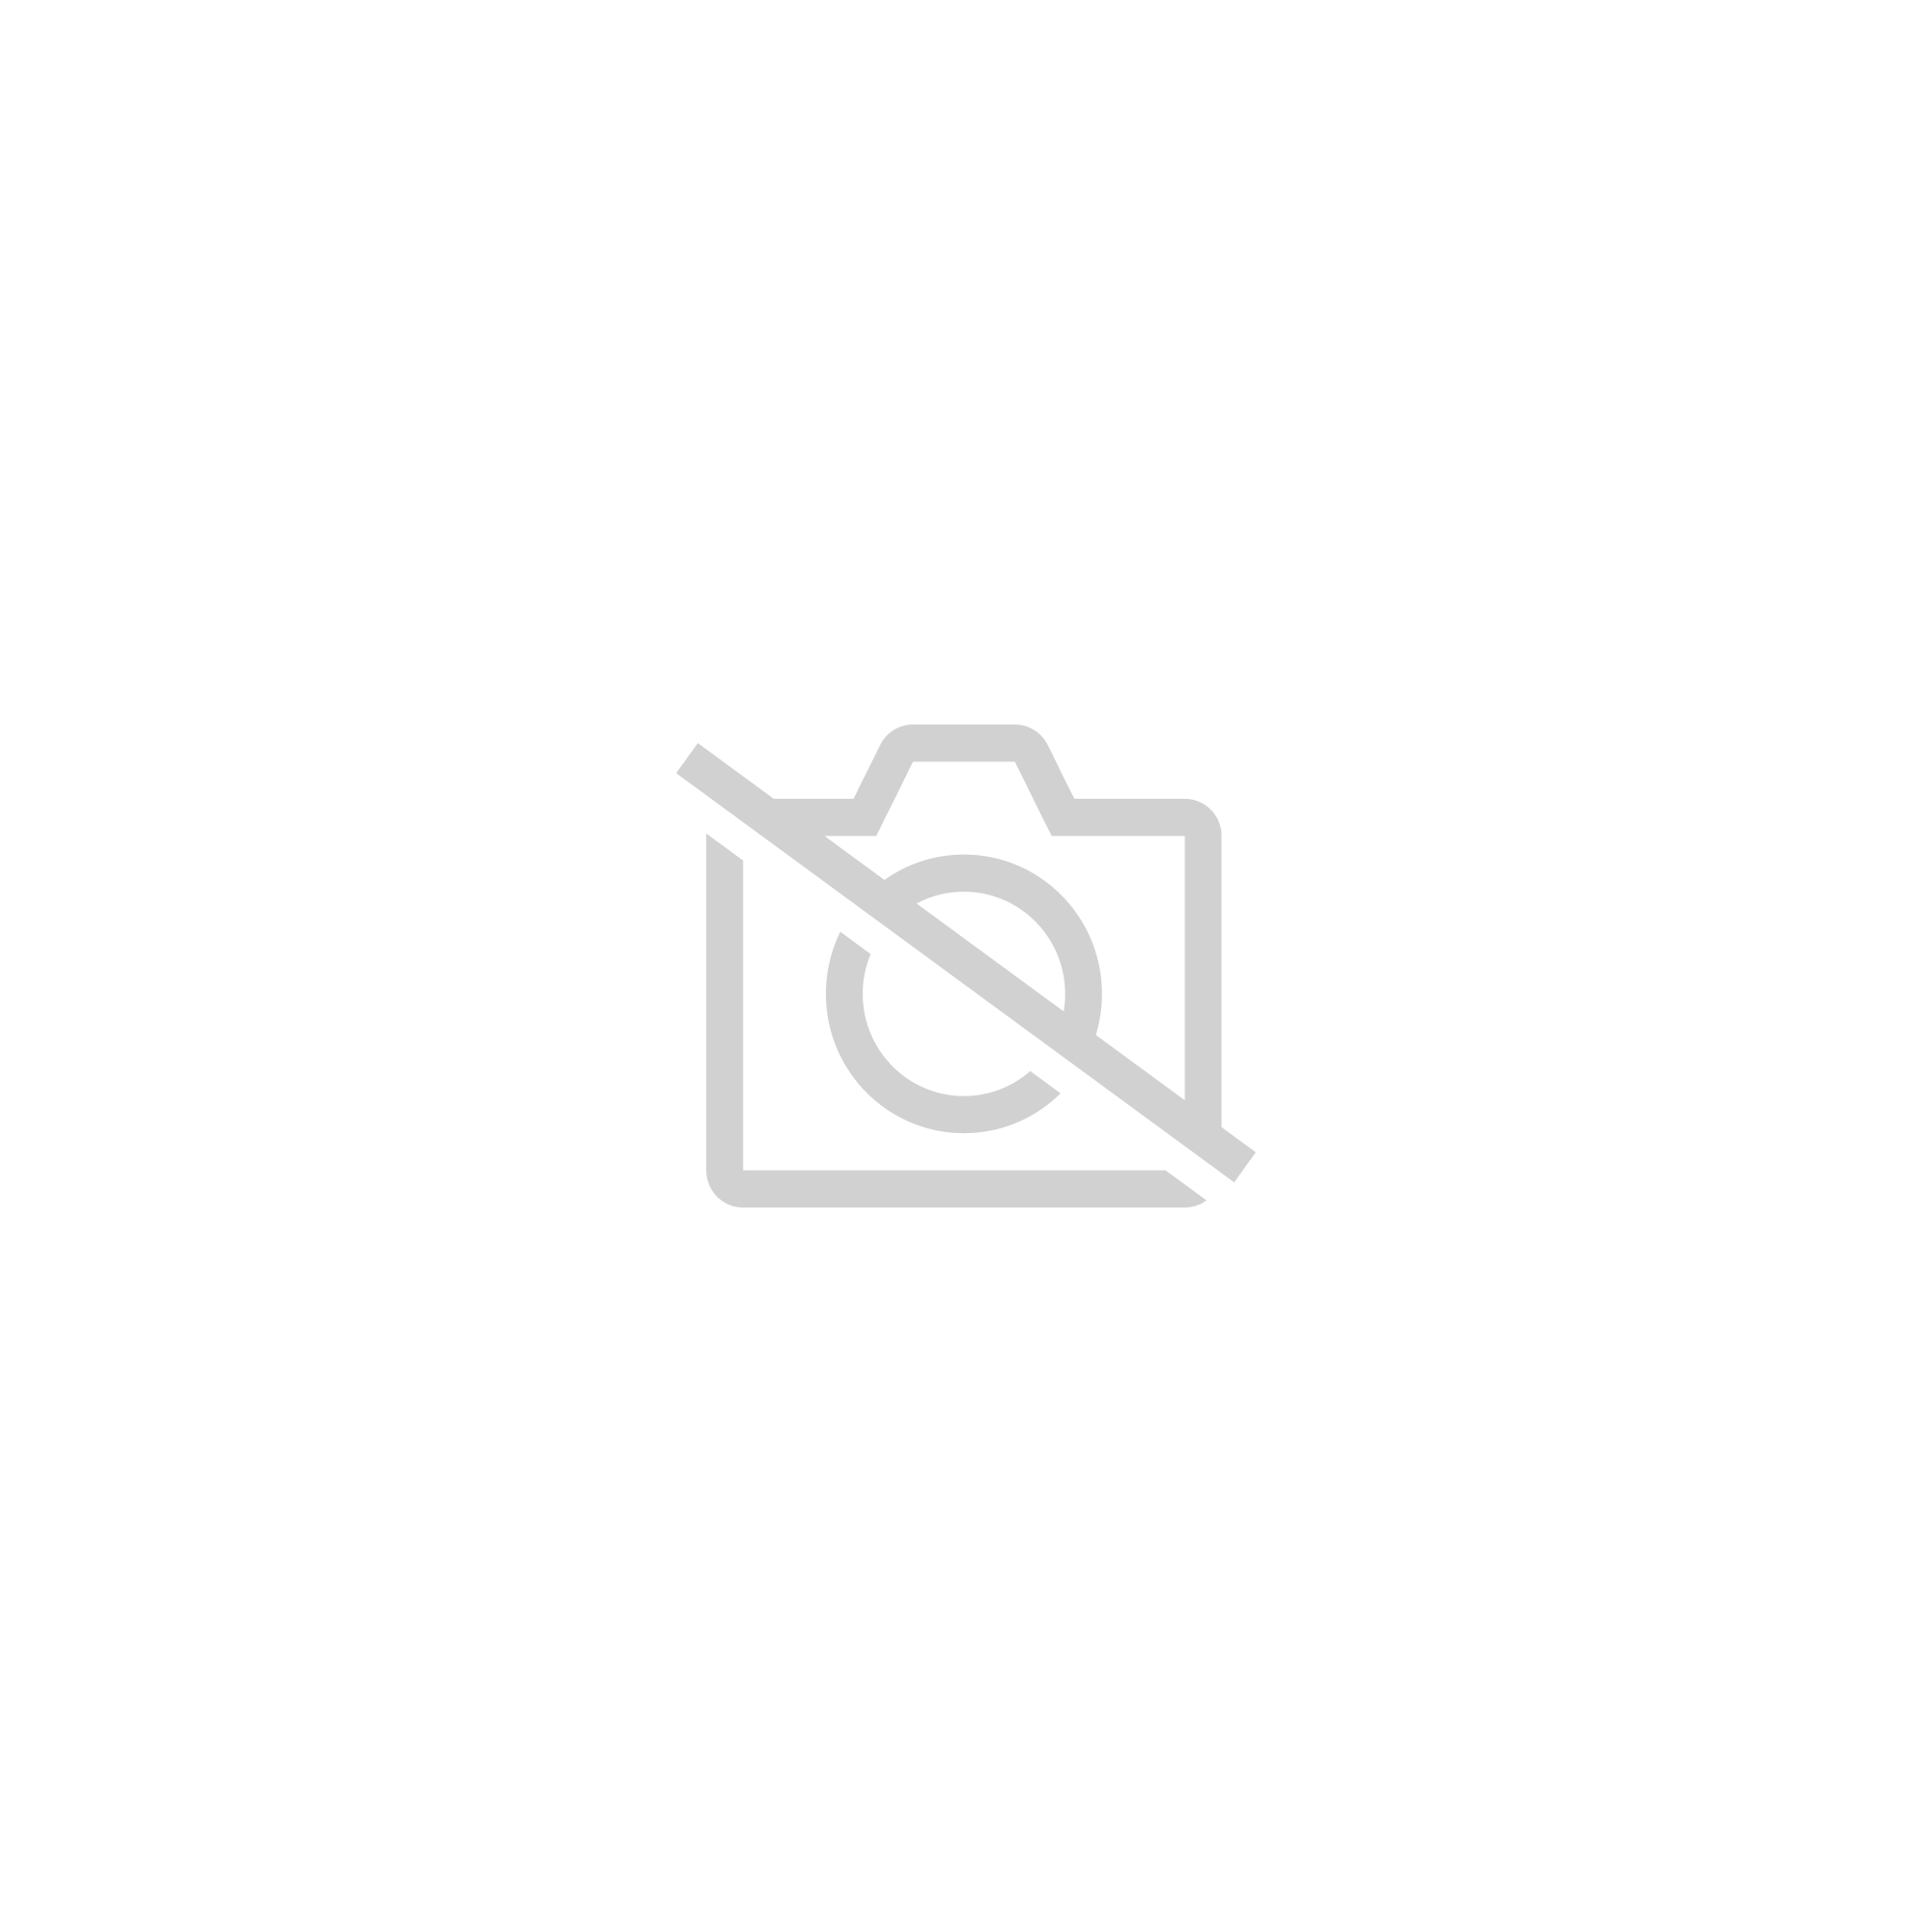 Robemon Doudoune Femme Chaud Manteau en Coton à Capuche Hiver Épais Blouson Col Fourrure Manche Longue Mode Manteaux Mi-Longue 